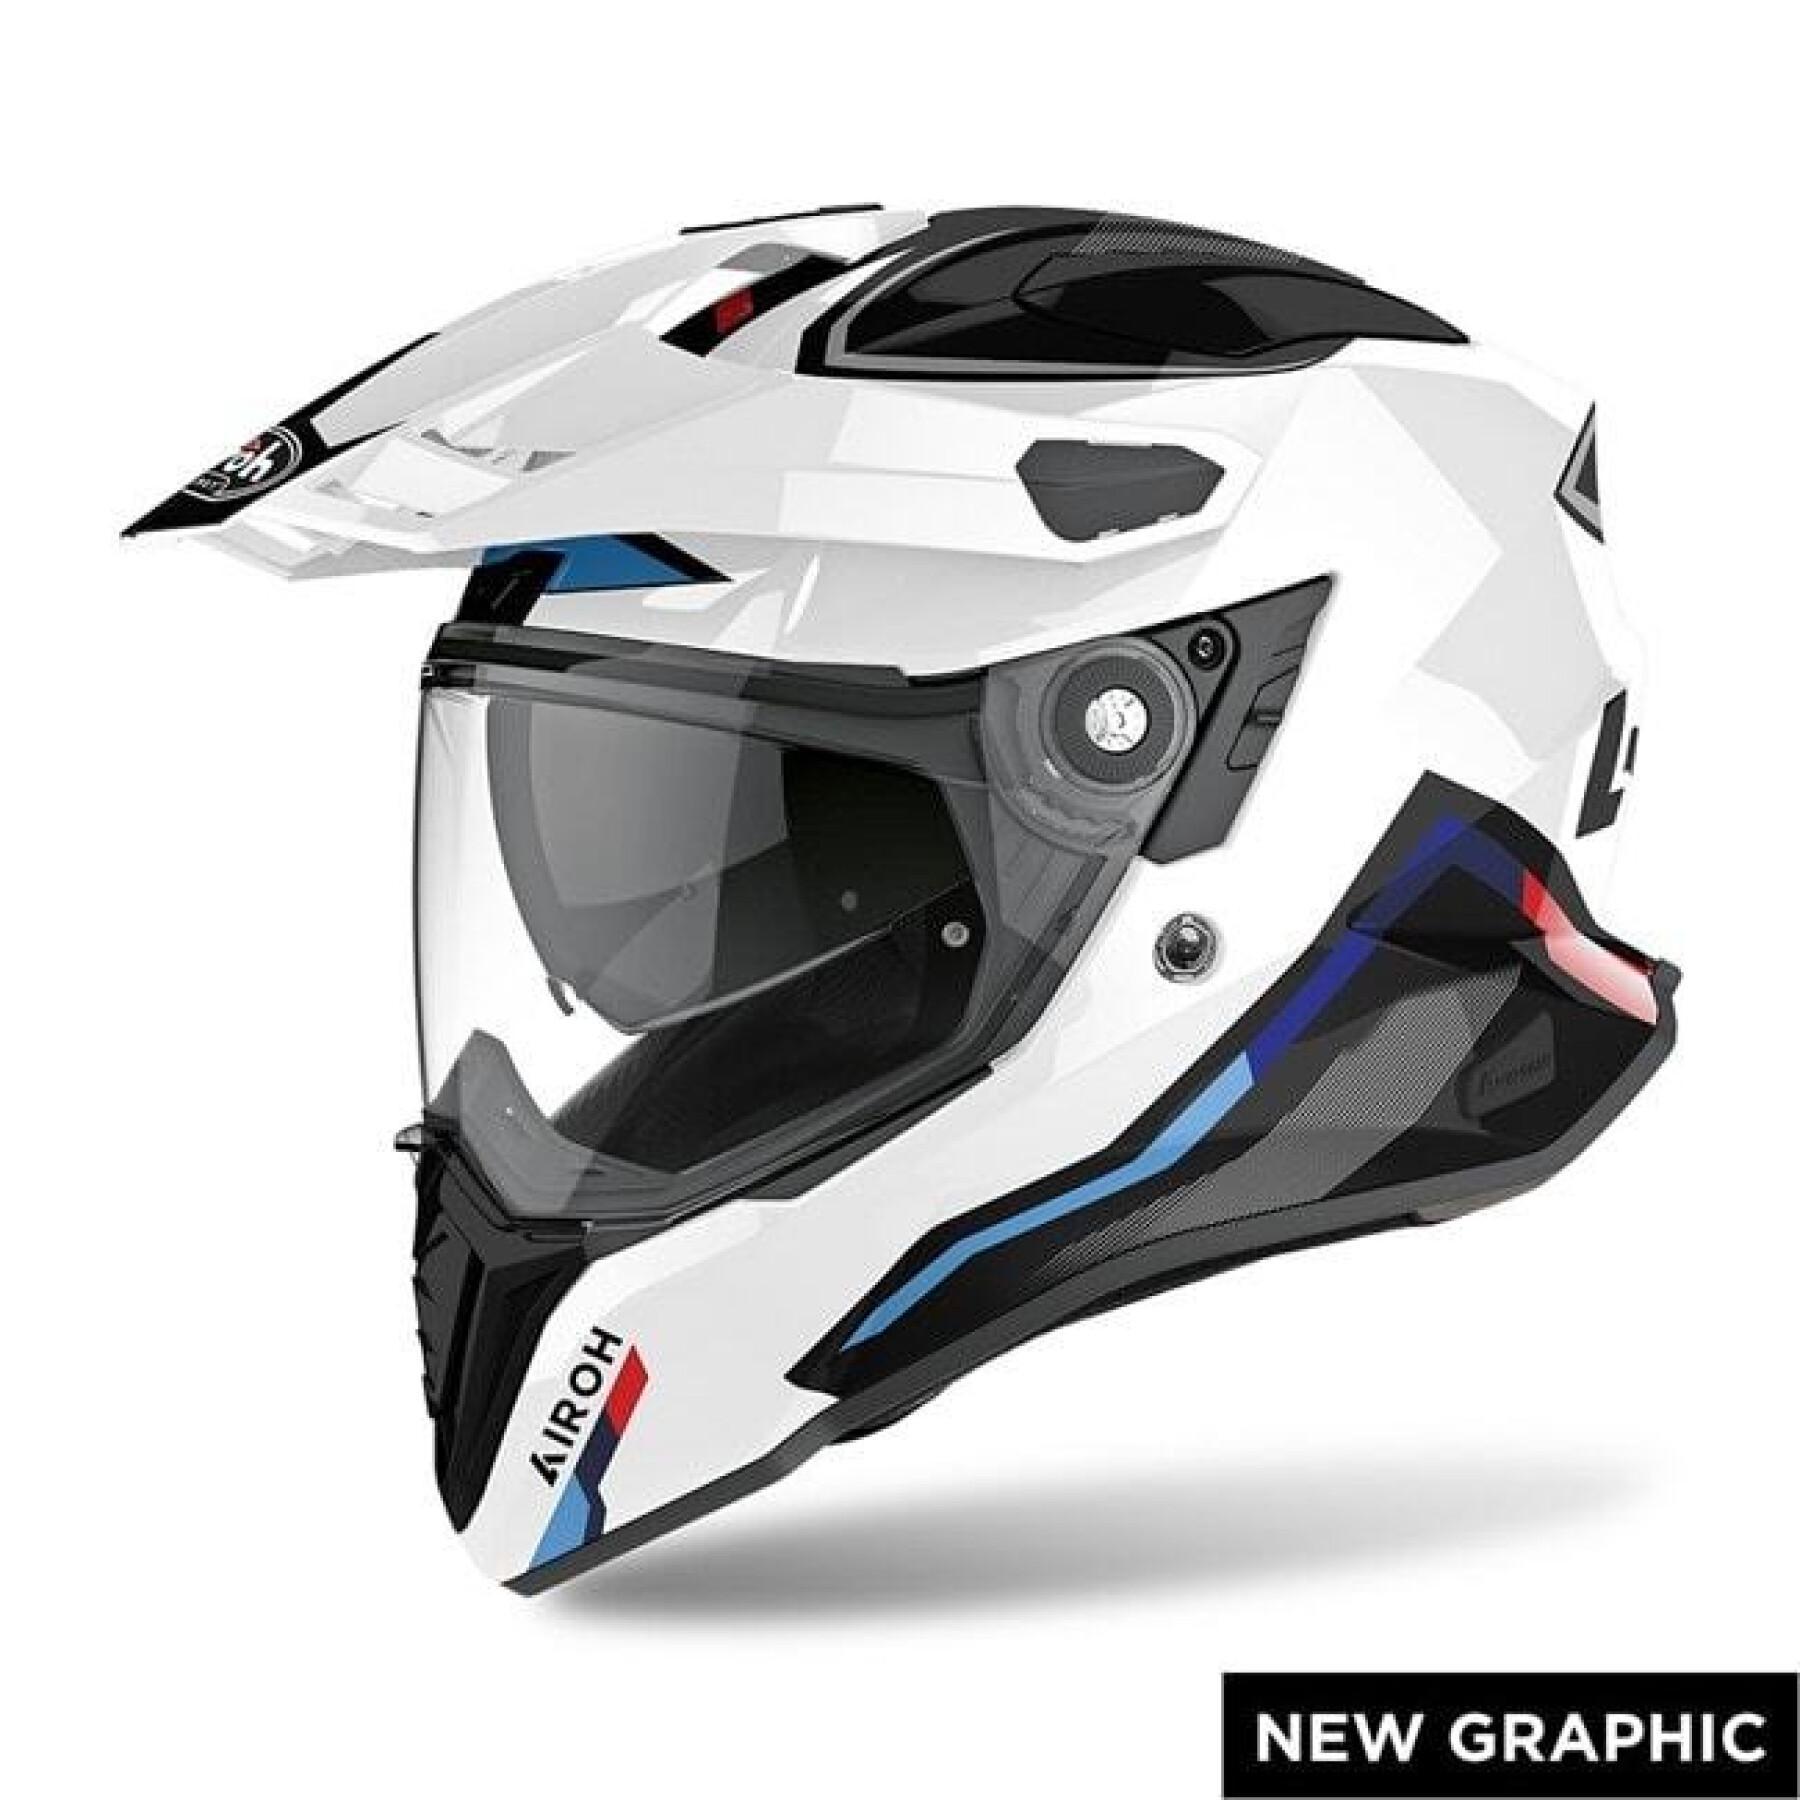 Motorcycle helmet Airoh commander Factor